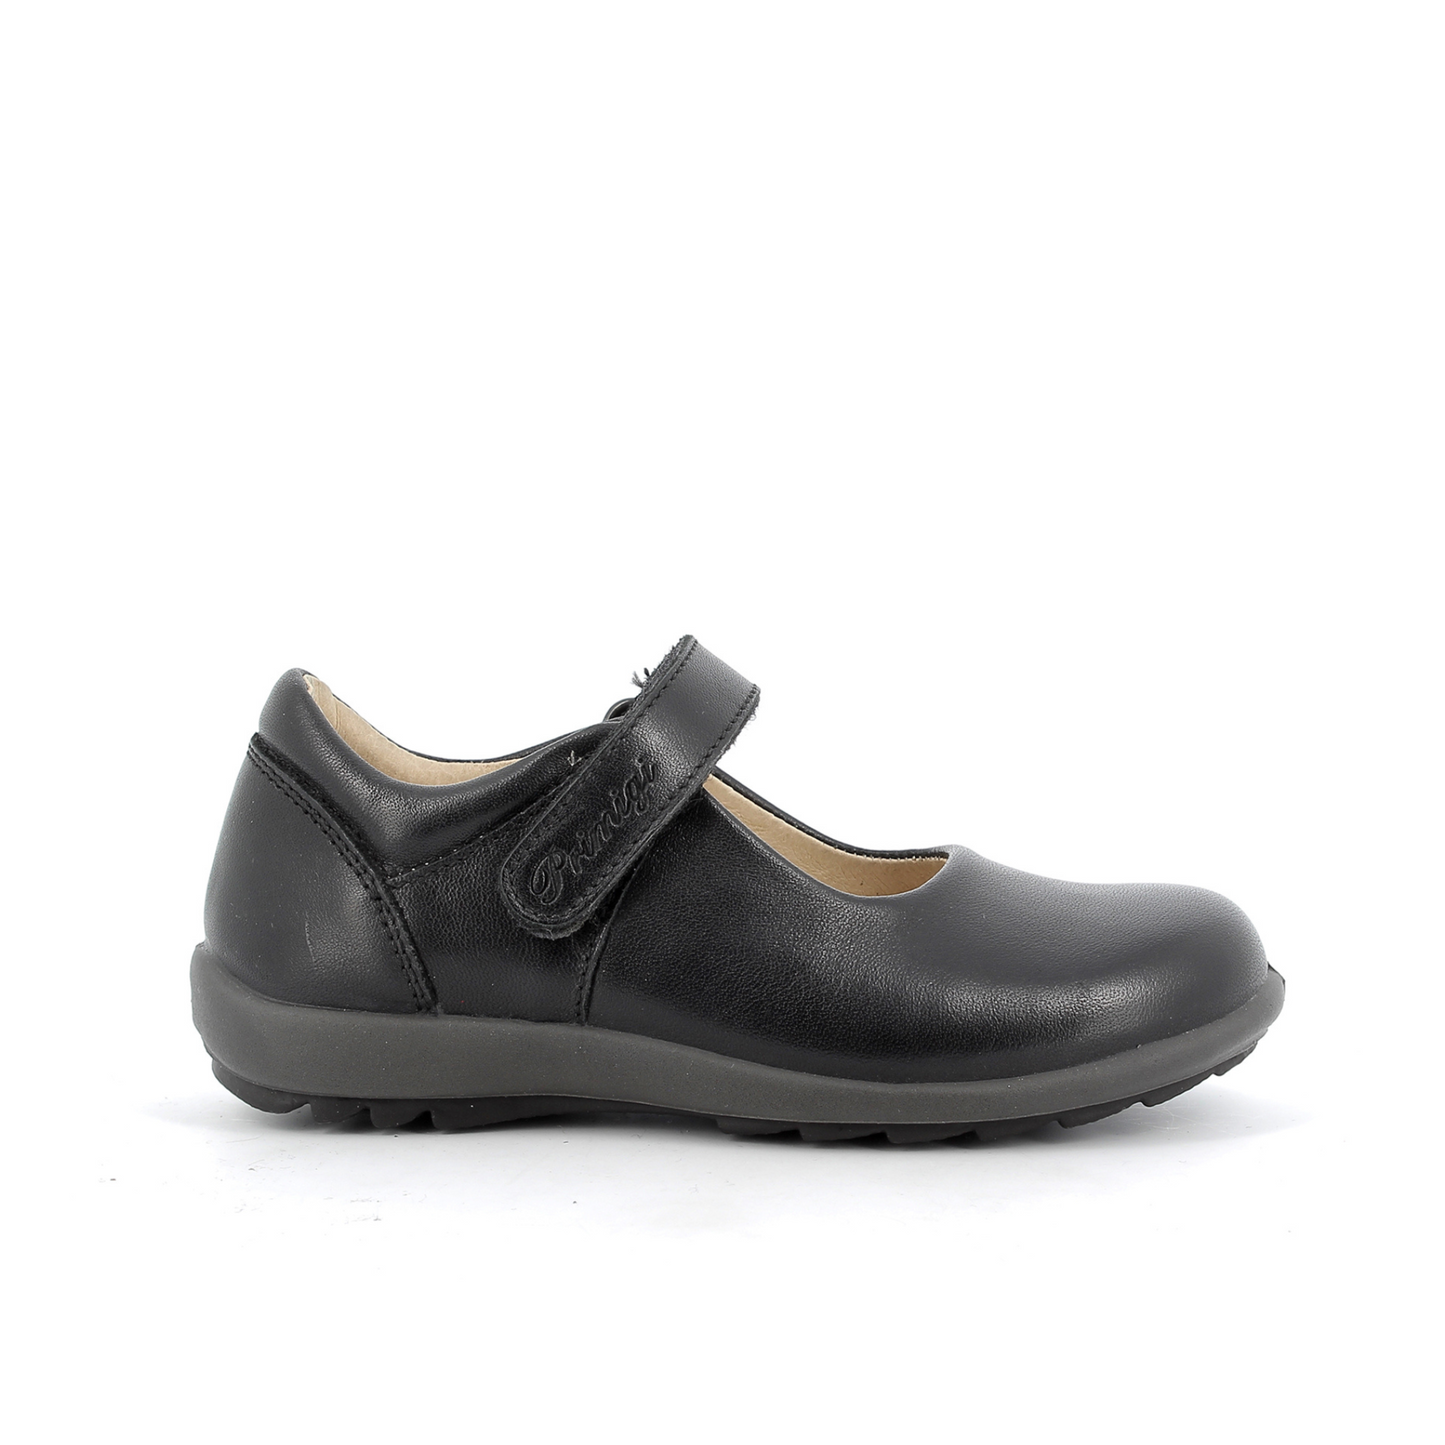 Olea Black Leather Mary-Jane Girls Shoe